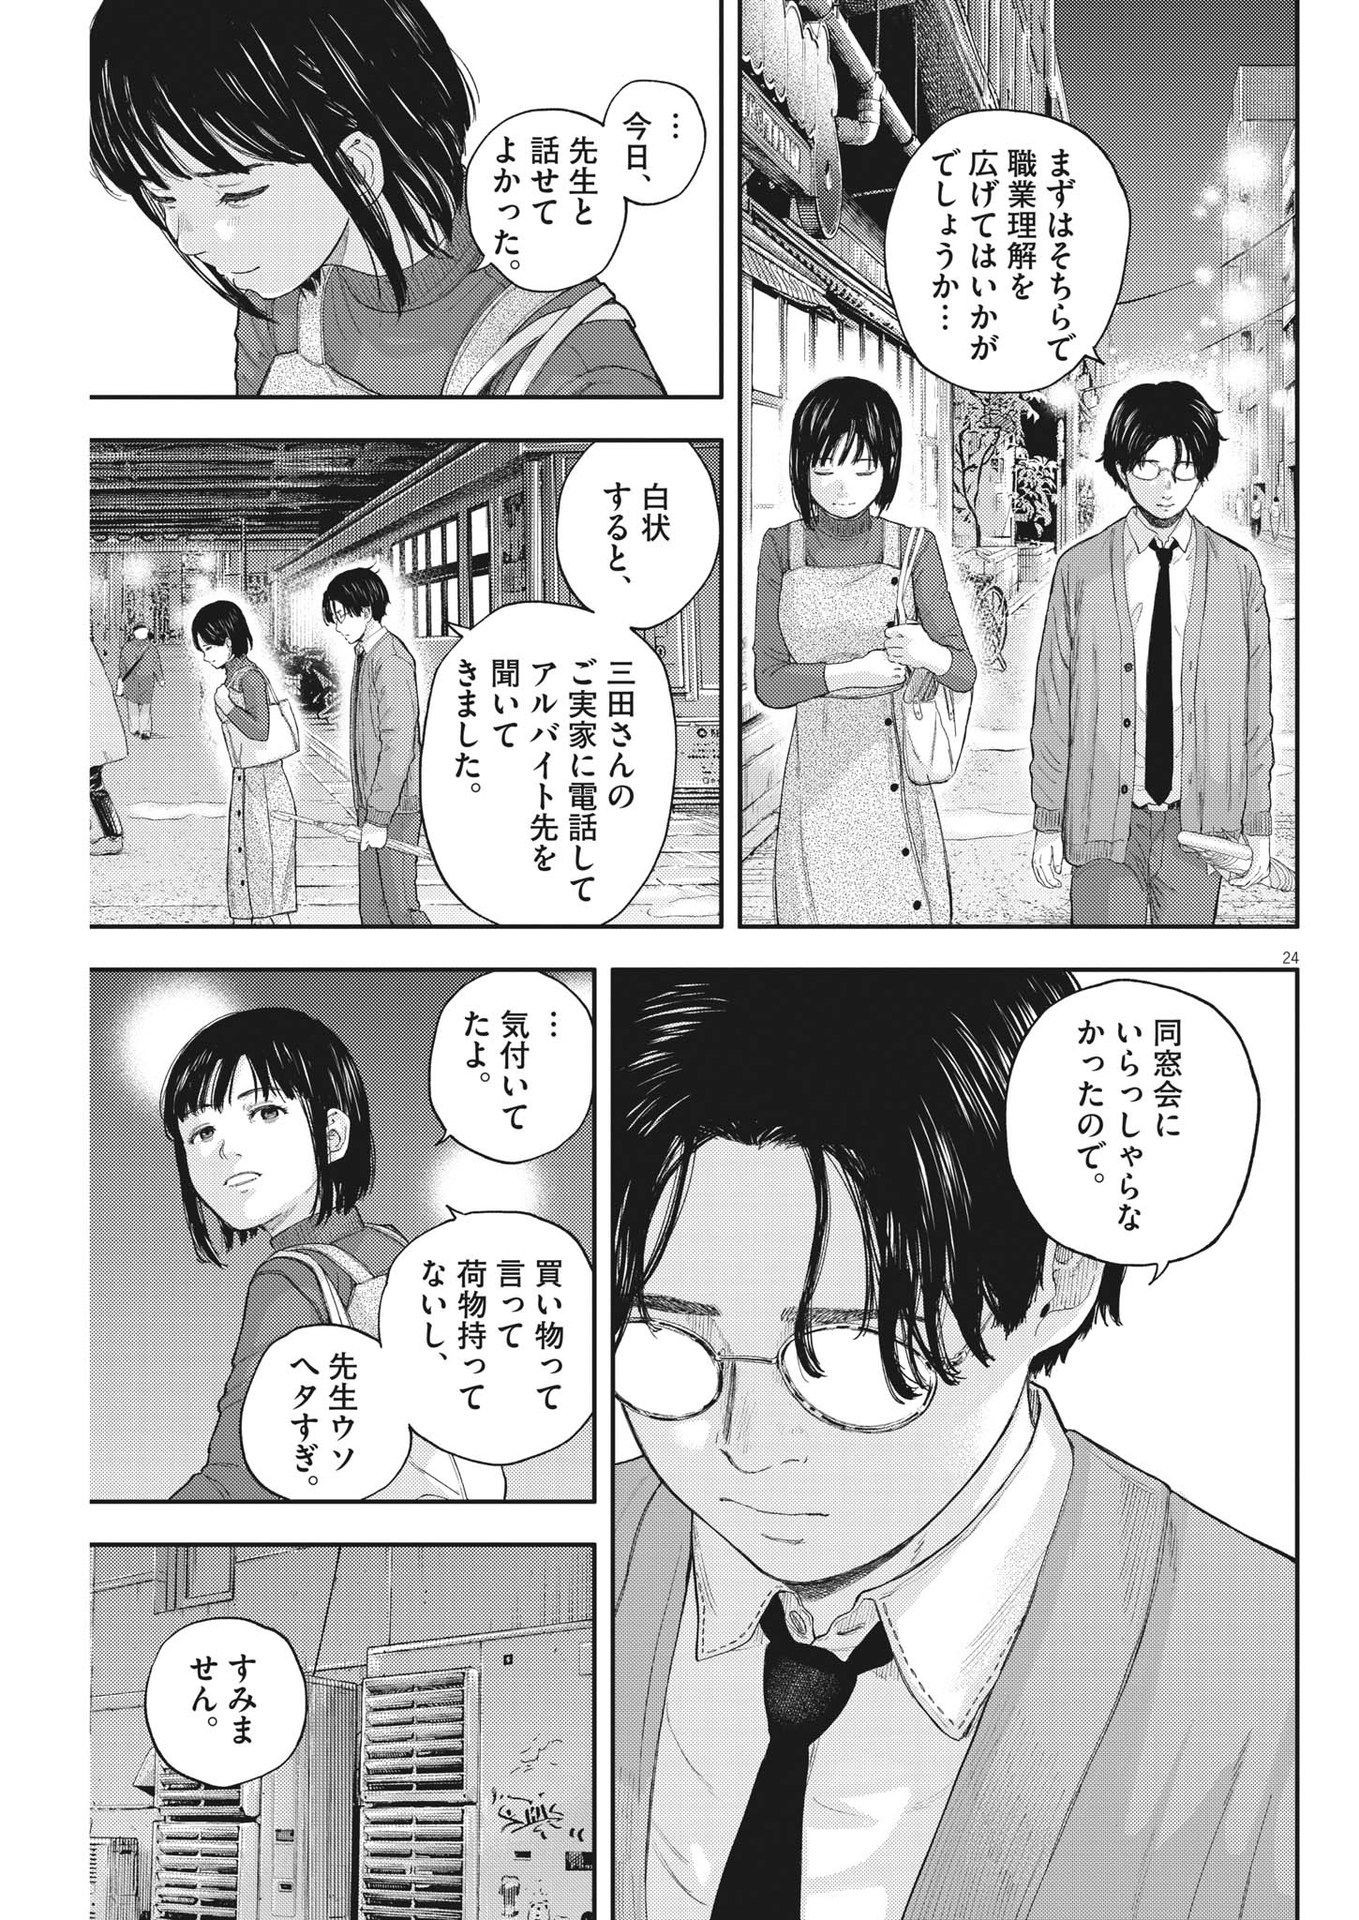 Yumenashi-sensei no Shinroshidou - Chapter 2 - Page 24